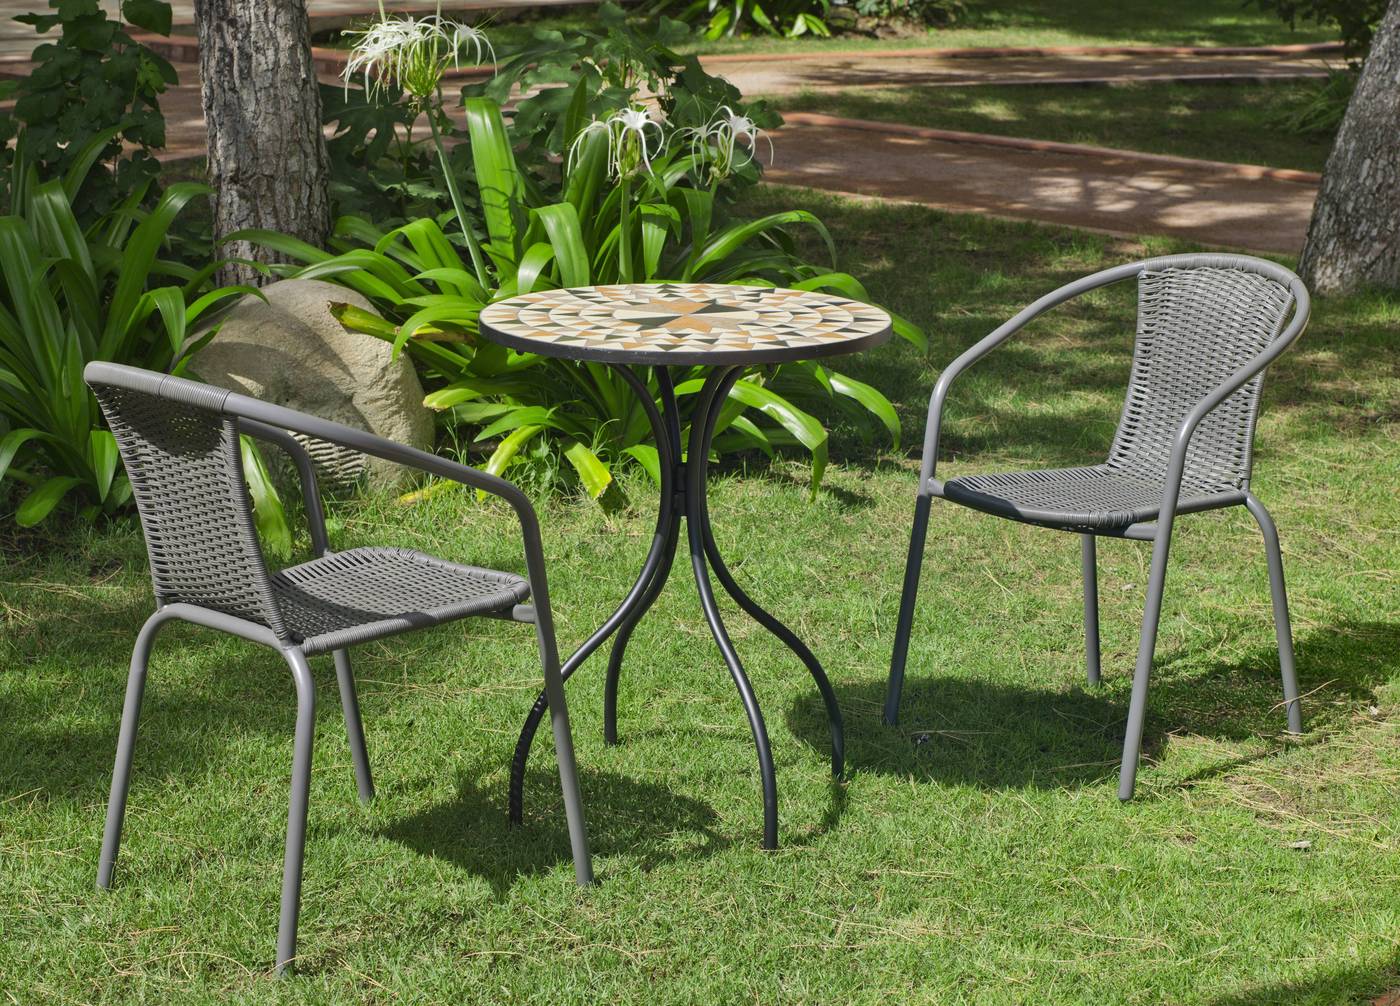 Conjunto de terraza y jardín color gris: mesa redonda de acero forjado, con tablero mosaico de 60 cm. + 2 sillones apilables de wicker